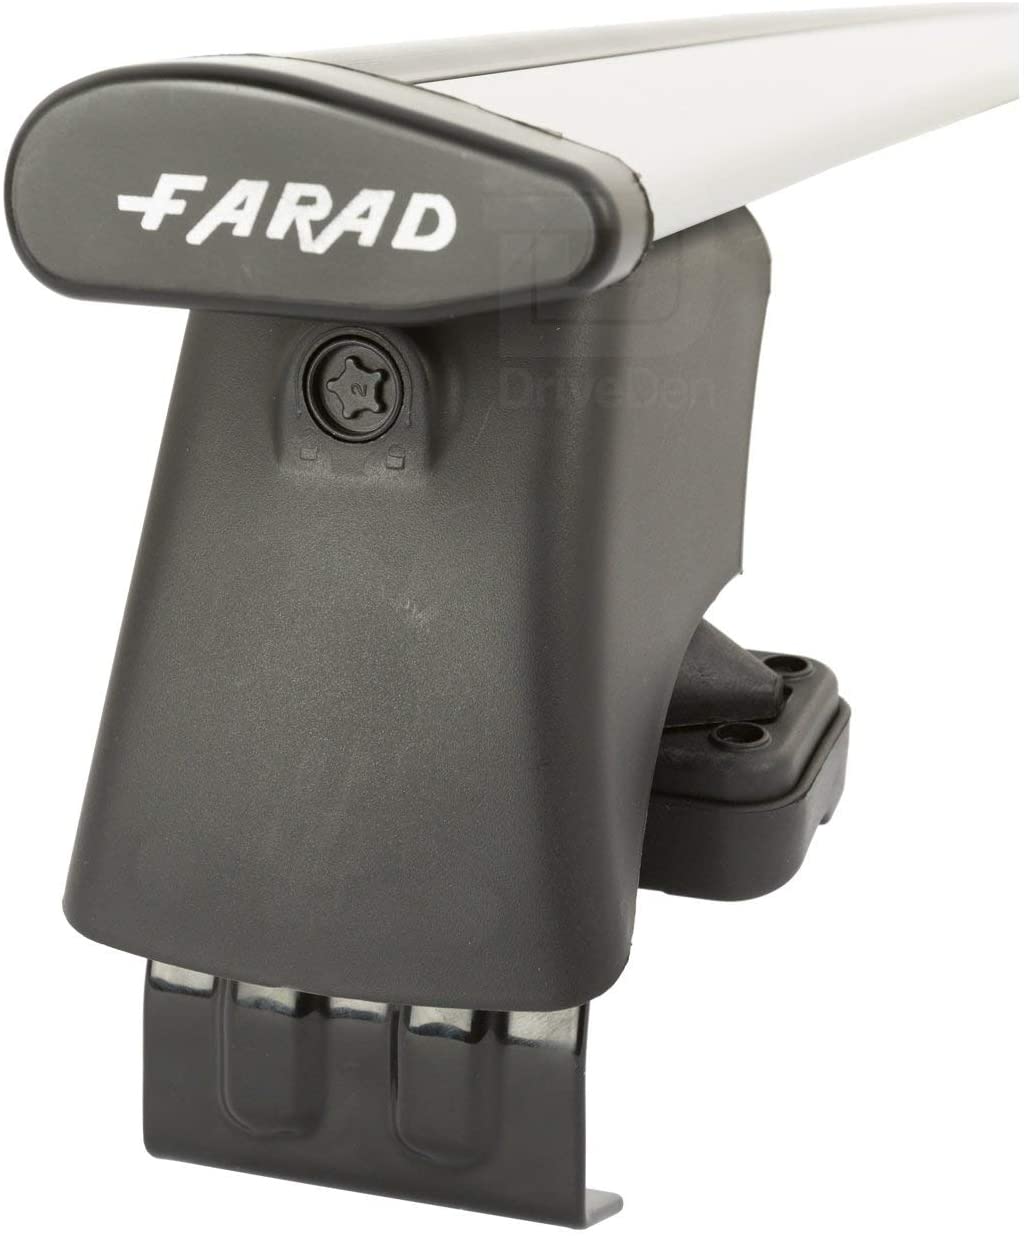 FARAD-Kit H2 per barre portatutto - Skoda Octavia 2020> (senza corrimano)